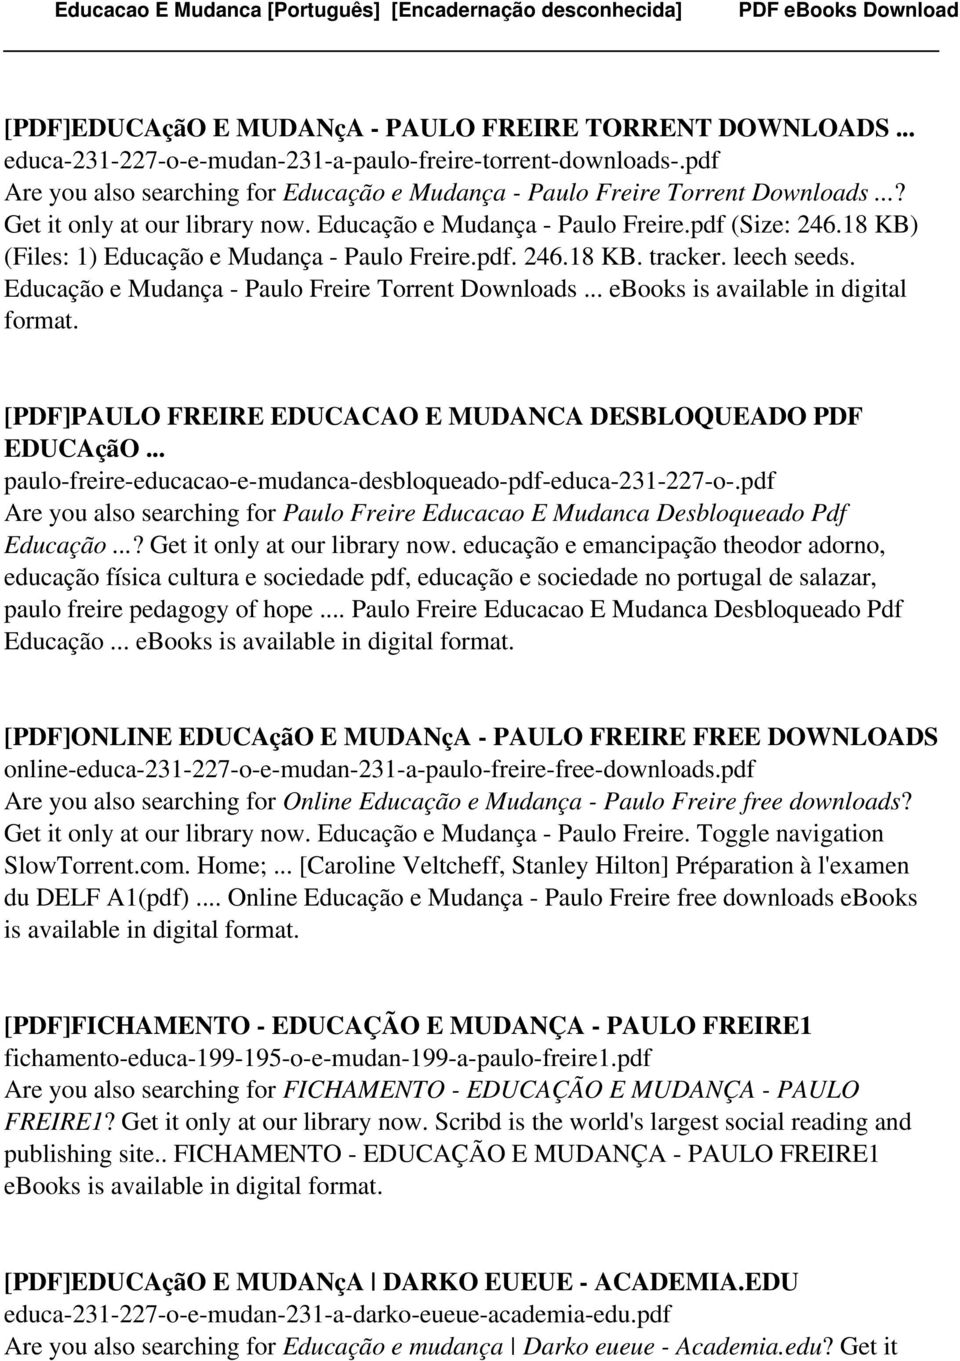 18 KB) (Files: 1) Educação e Mudança - Paulo Freire.pdf. 246.18 KB. tracker. leech seeds. Educação e Mudança - Paulo Freire Torrent Downloads... ebooks is available in digital format.